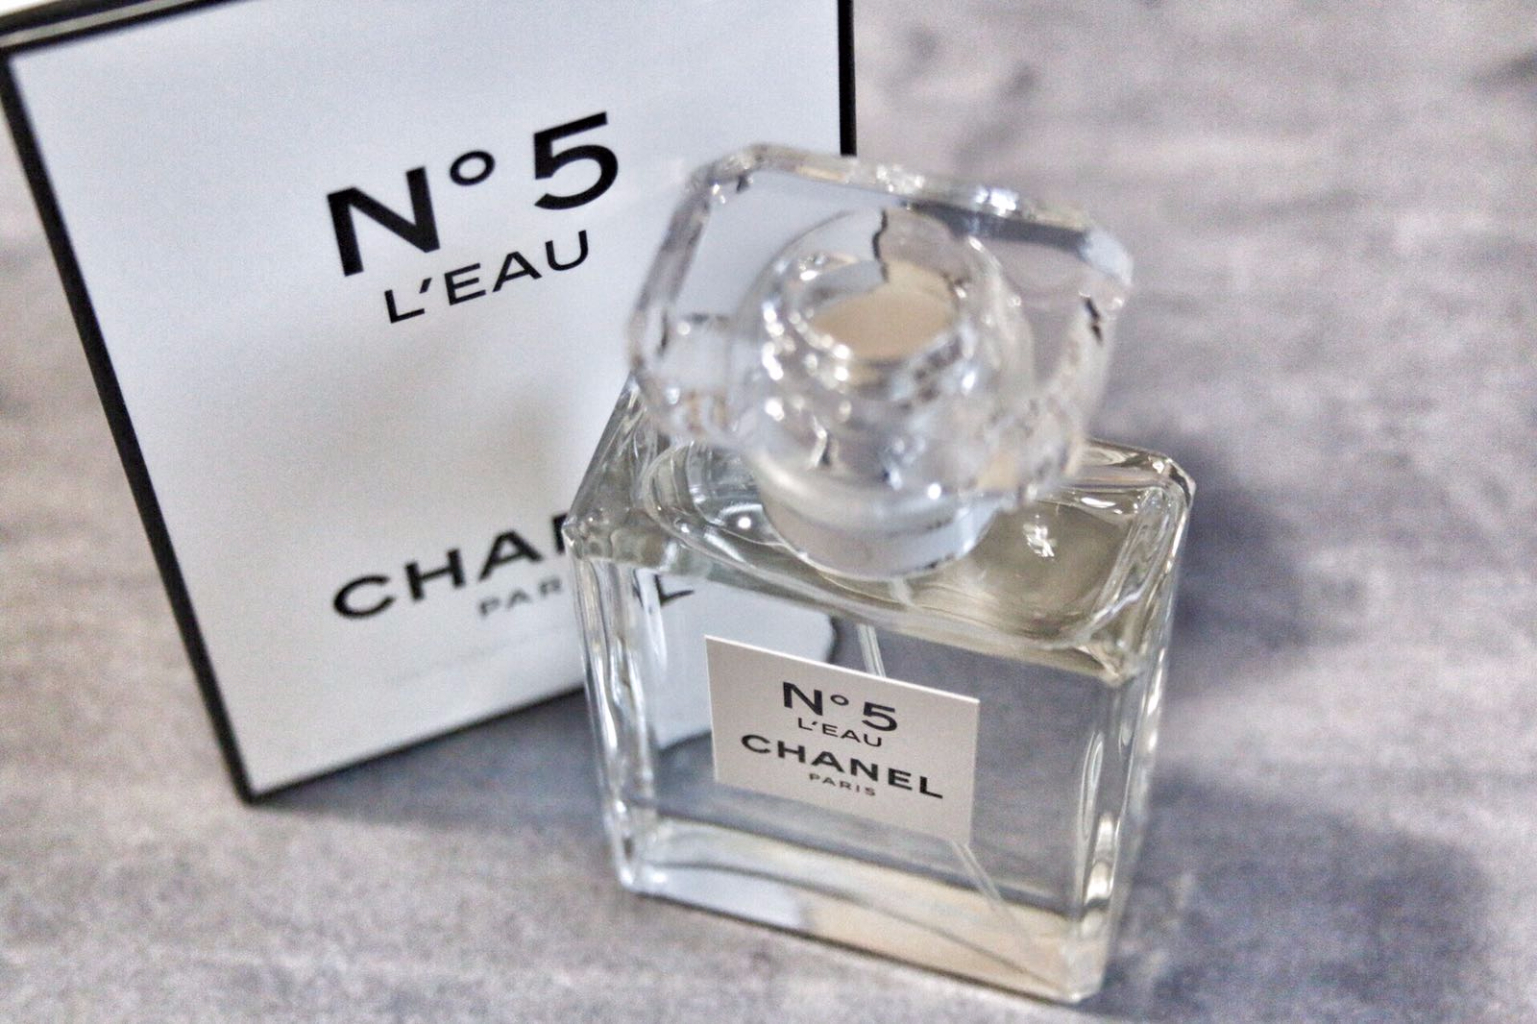 N ° 5 L’EAU Chanel ora nel formato da 35ml.